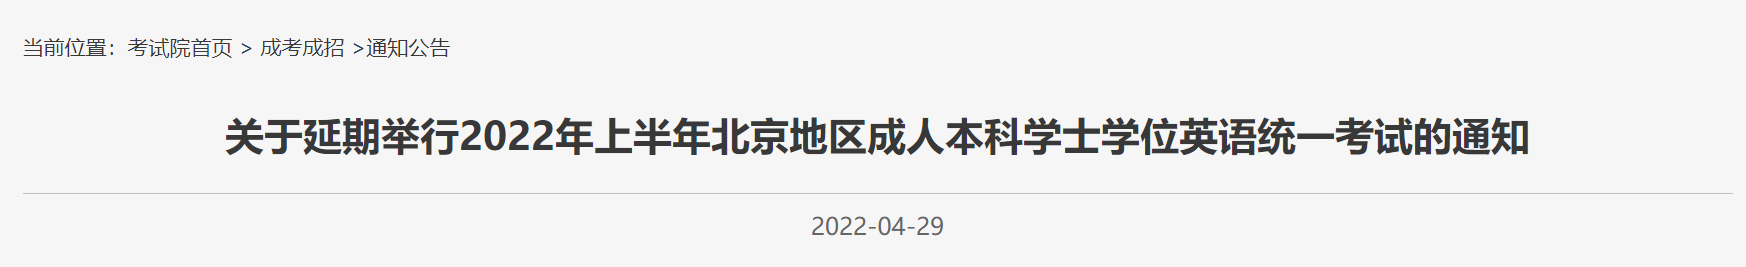 2022上半年北京成人本科学士学位统一考试延期通知